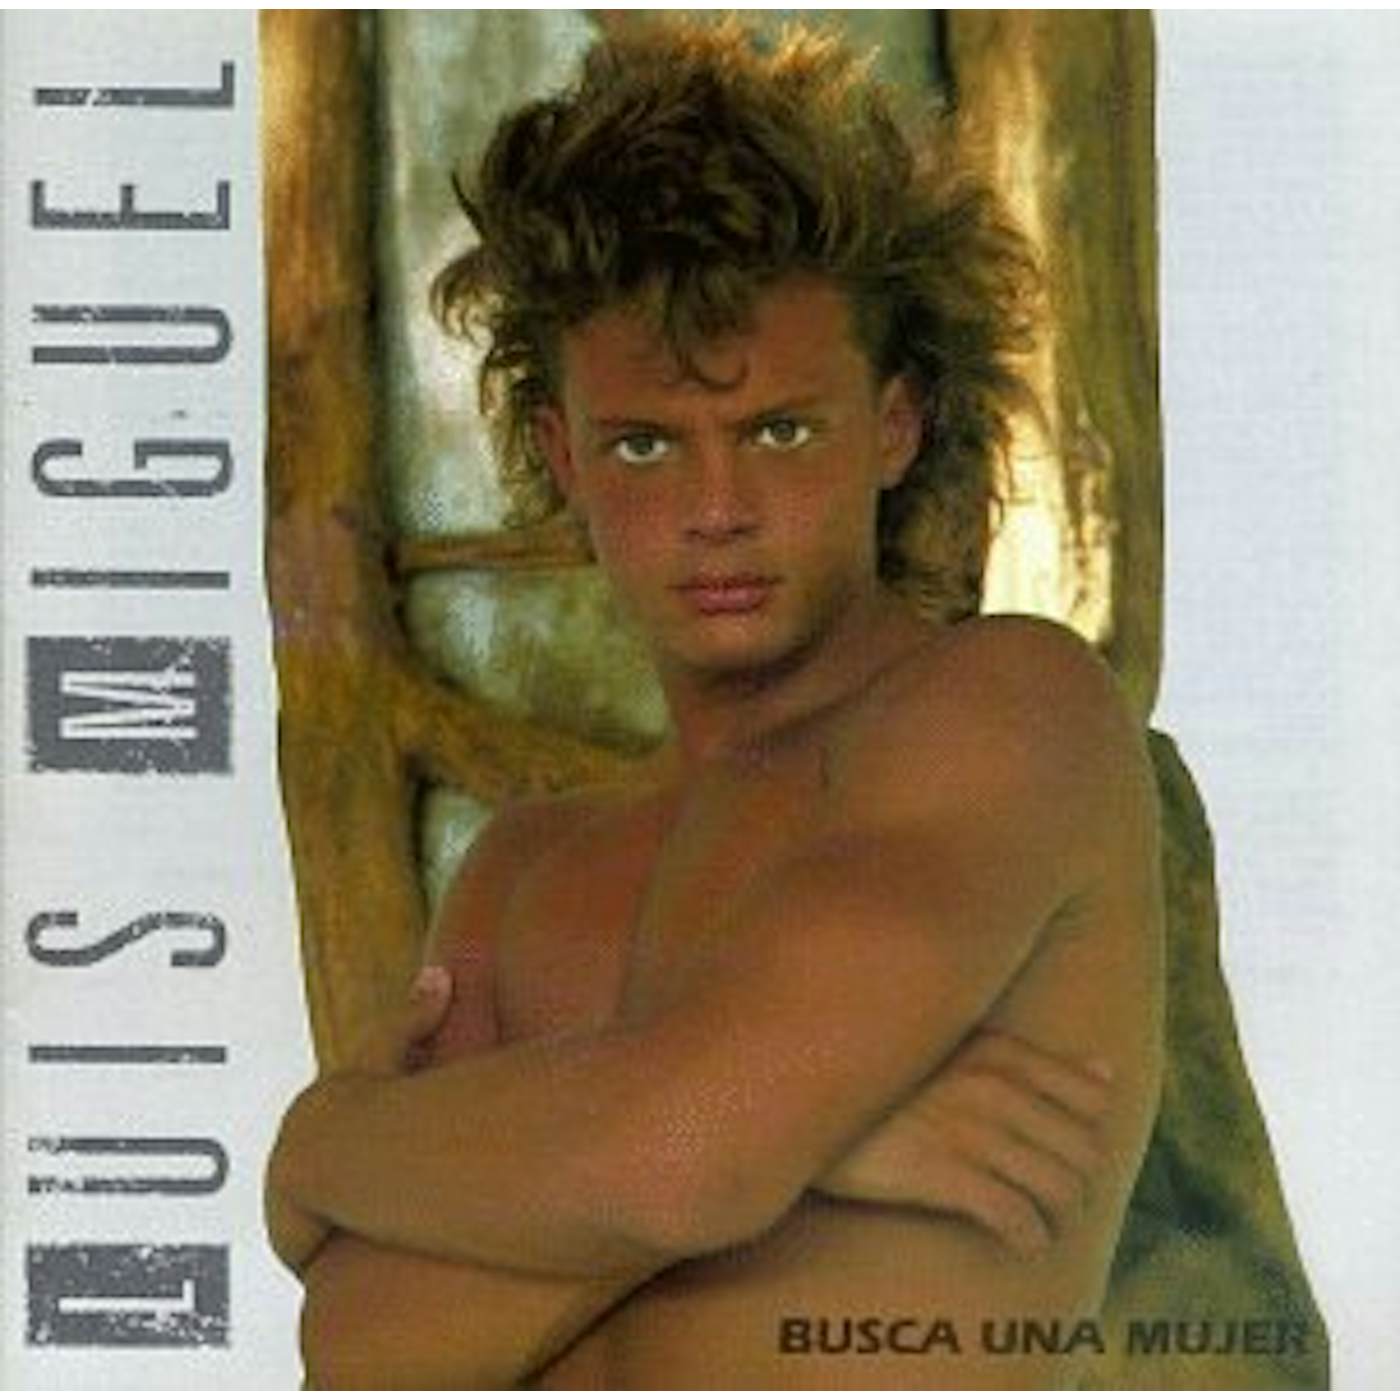 Luis Miguel BUSCA UNA MUJER CD